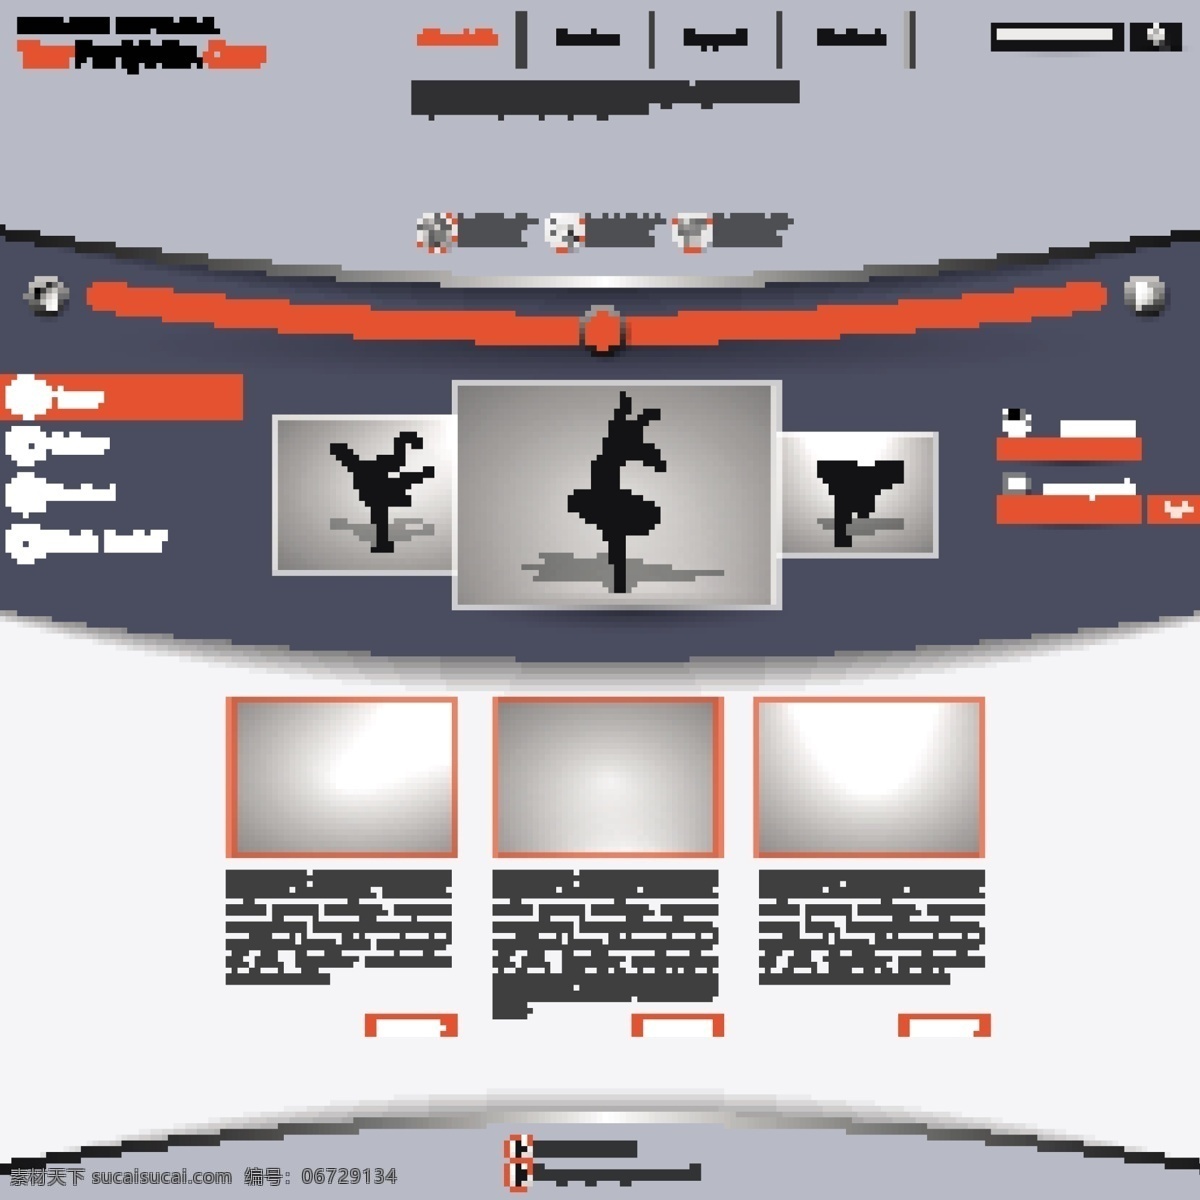 舞蹈 教学 网页设计 网页模板 网站模板 网站设计 网页界面模板 其他模板 矢量素材 白色